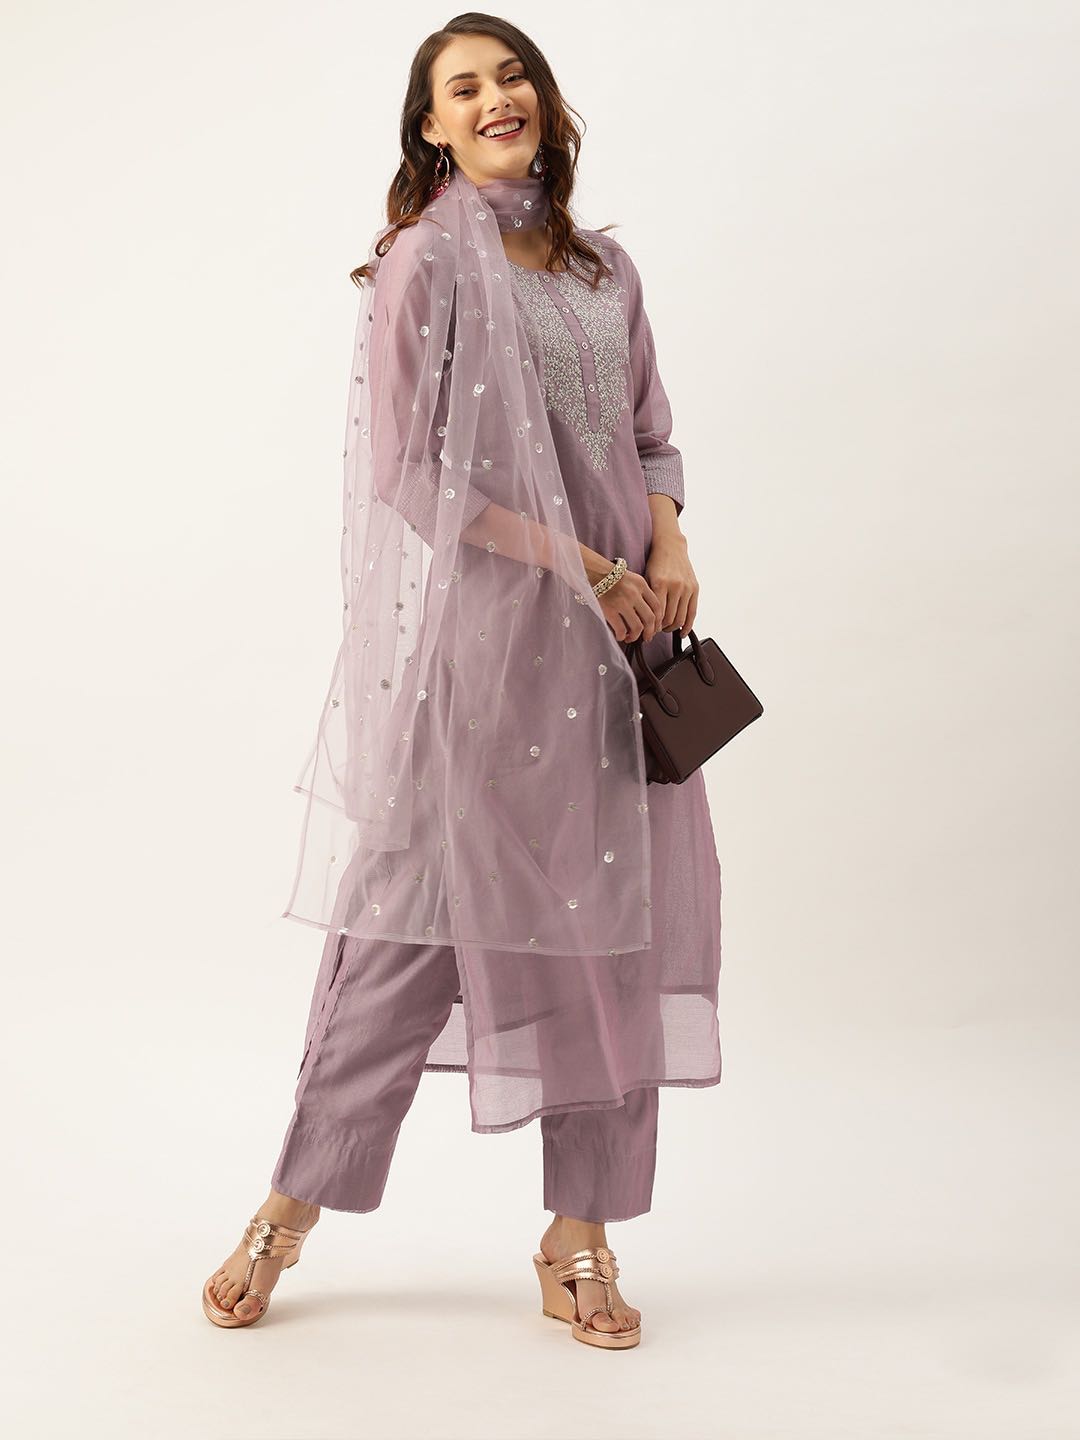 kurta set-dusshera outfit inspiration 2021